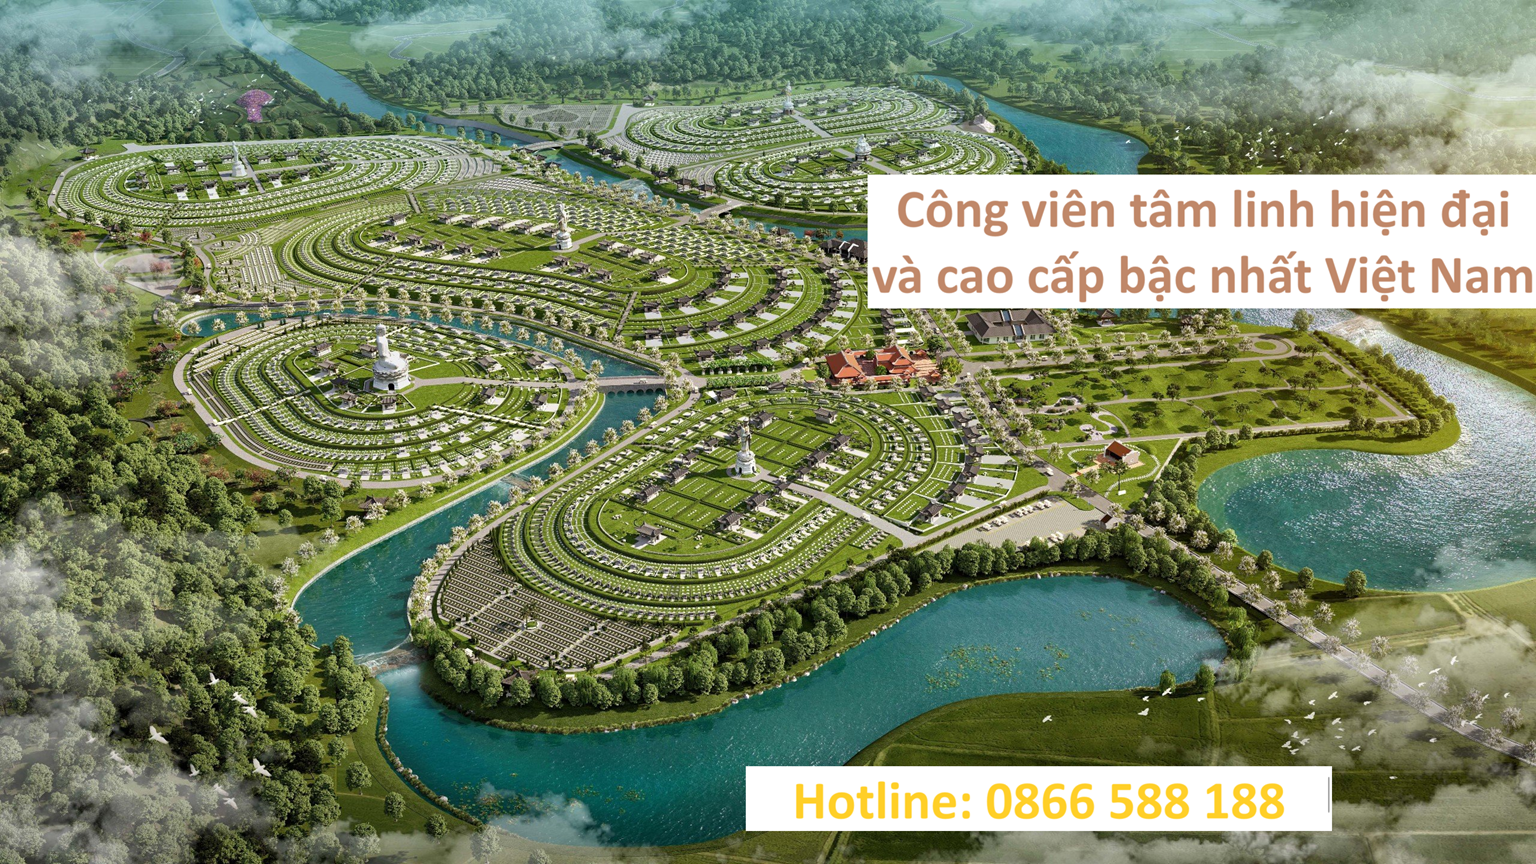 Công Viên Nghĩa Trang Thiên Đường Tuyên Quang - Công viên tâm linh hiện đại và cao cấp bậc nhất Việt Nam